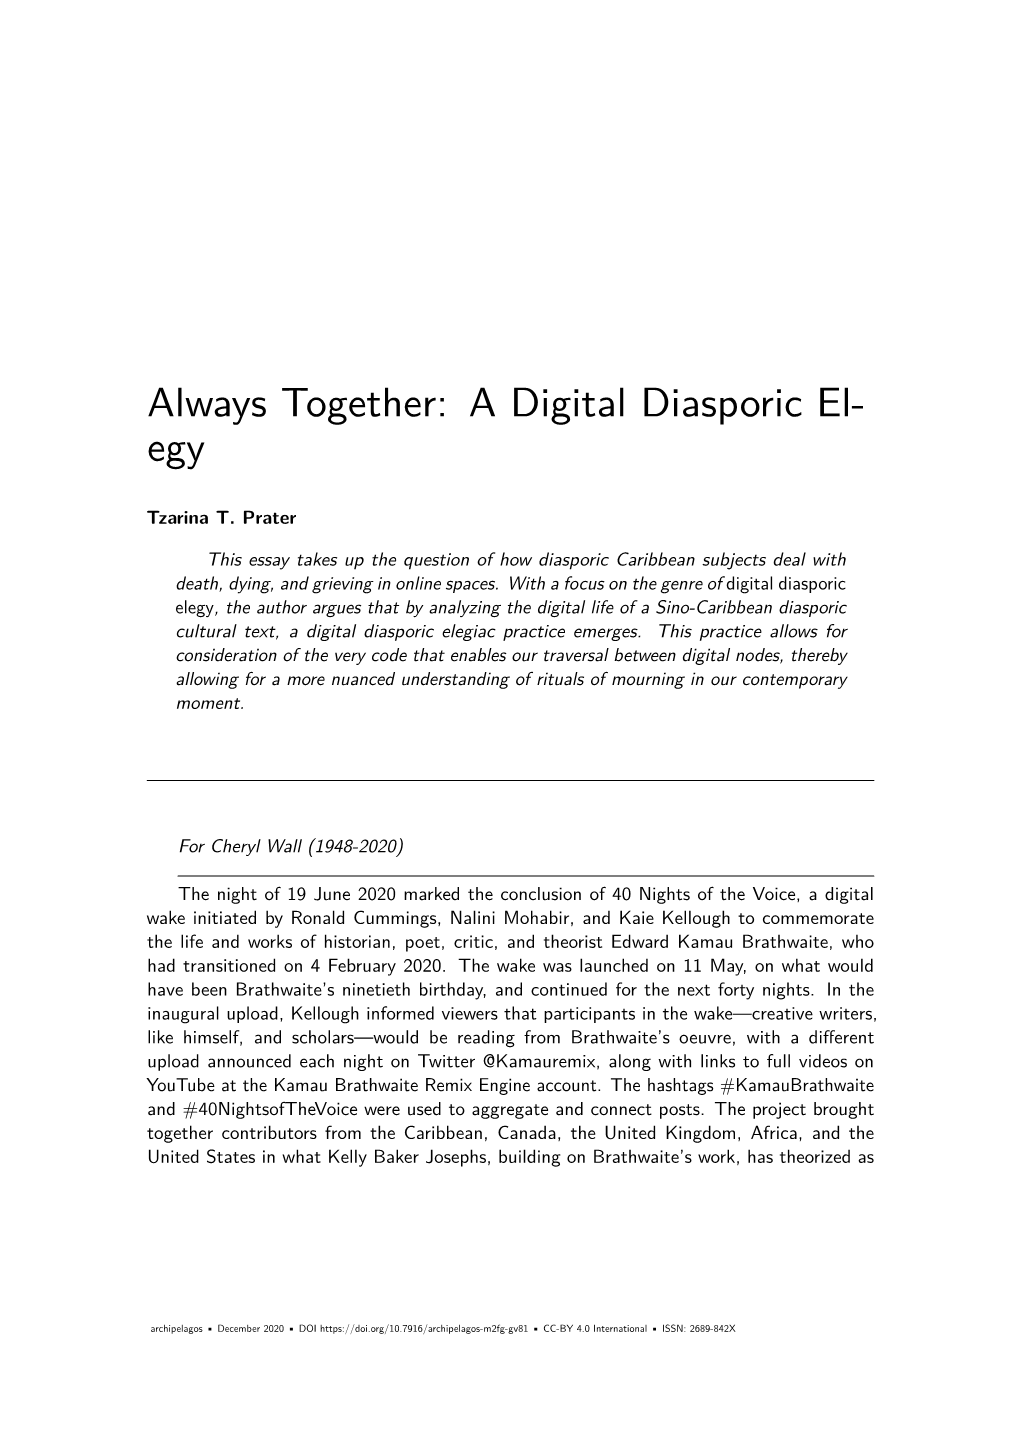 A Digital Diasporic Elegy